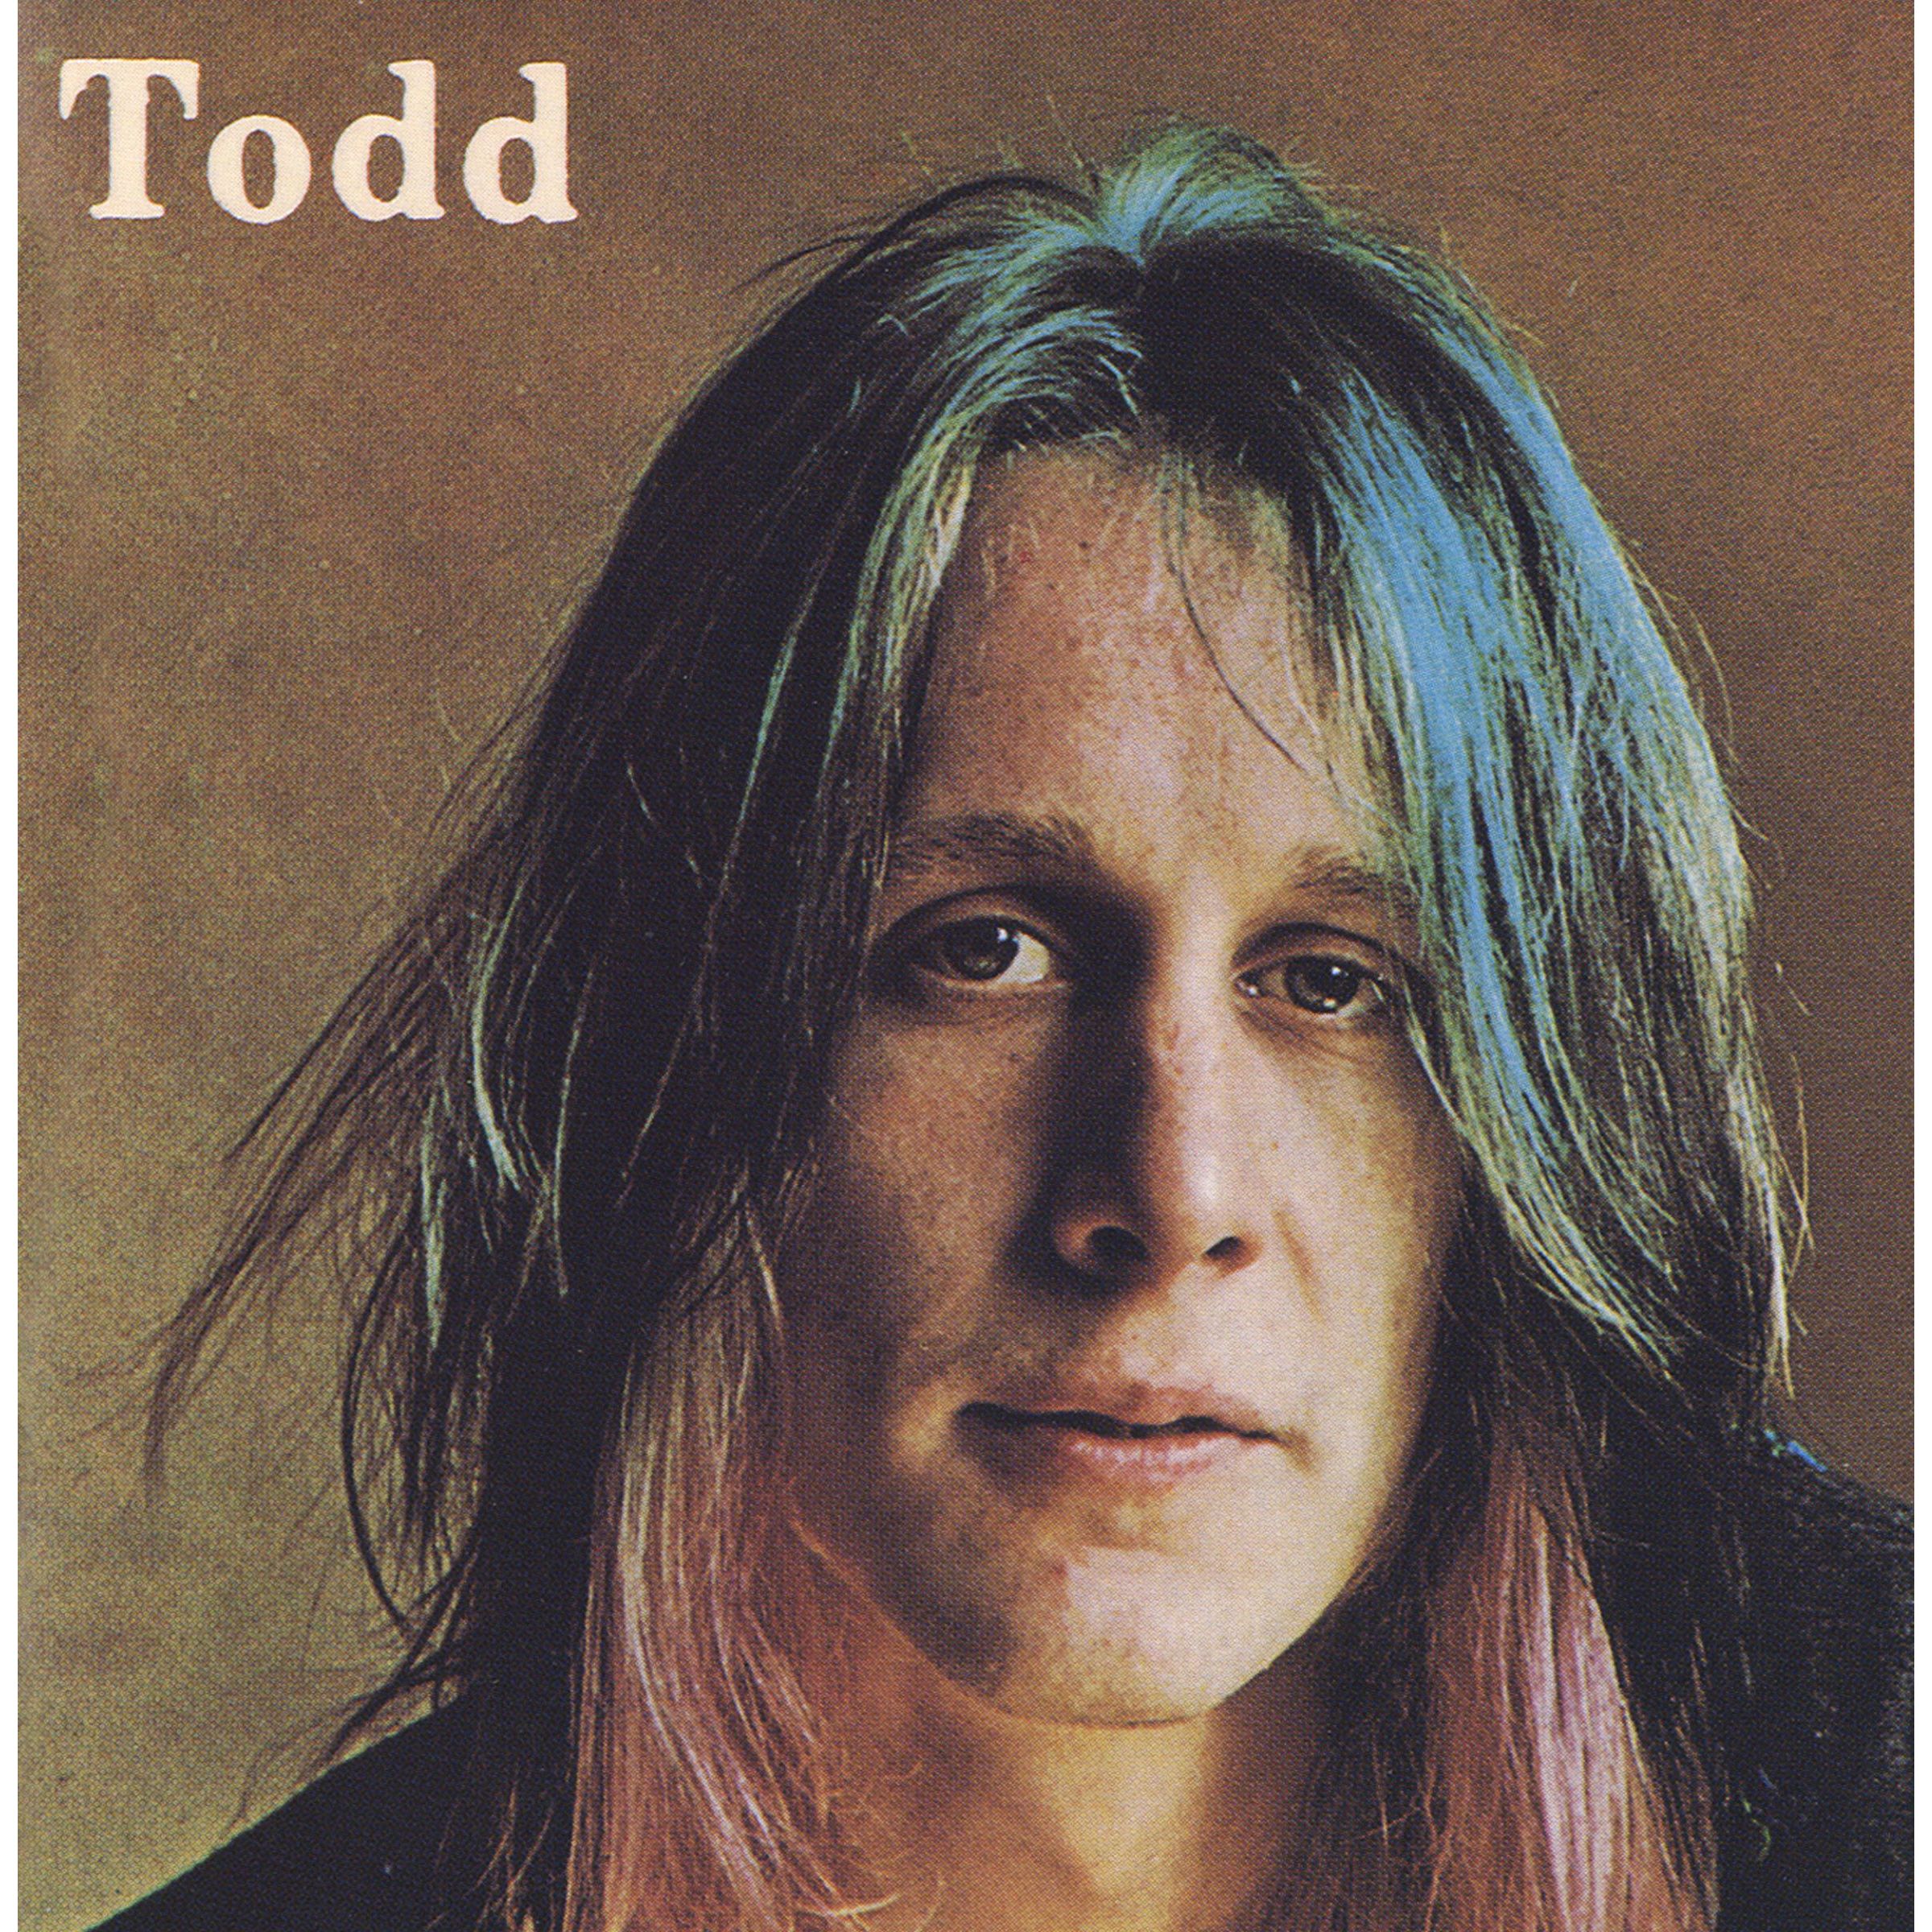 Todd Rundgren – Todd